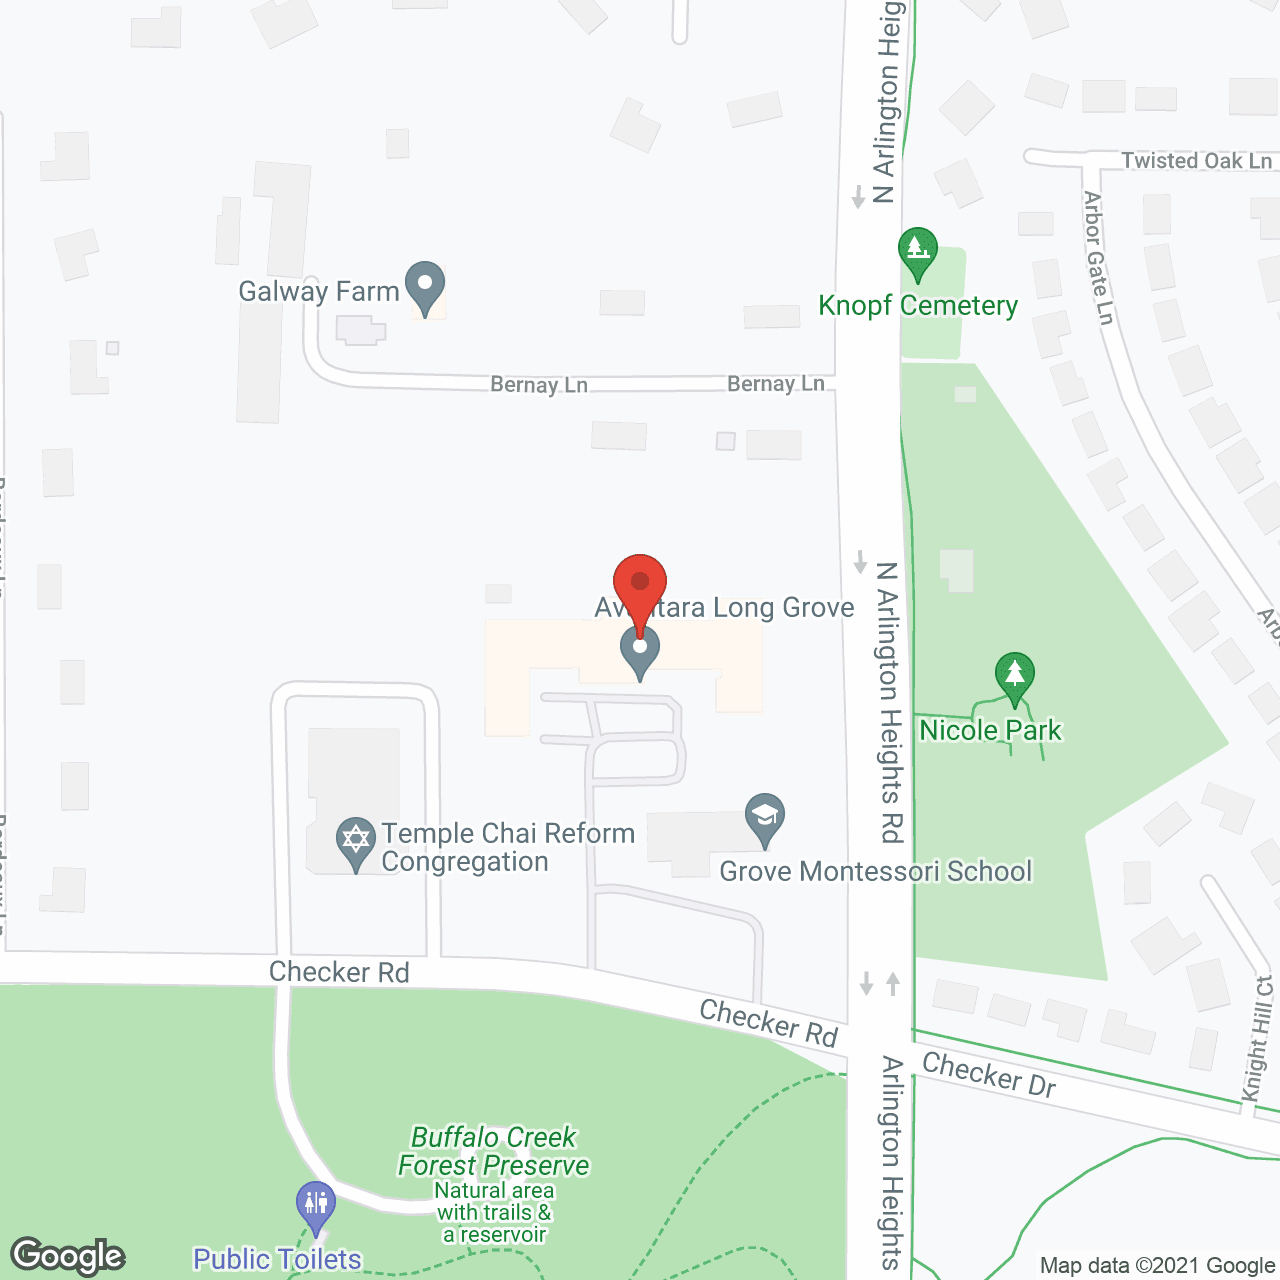 Avantara Long Grove in google map